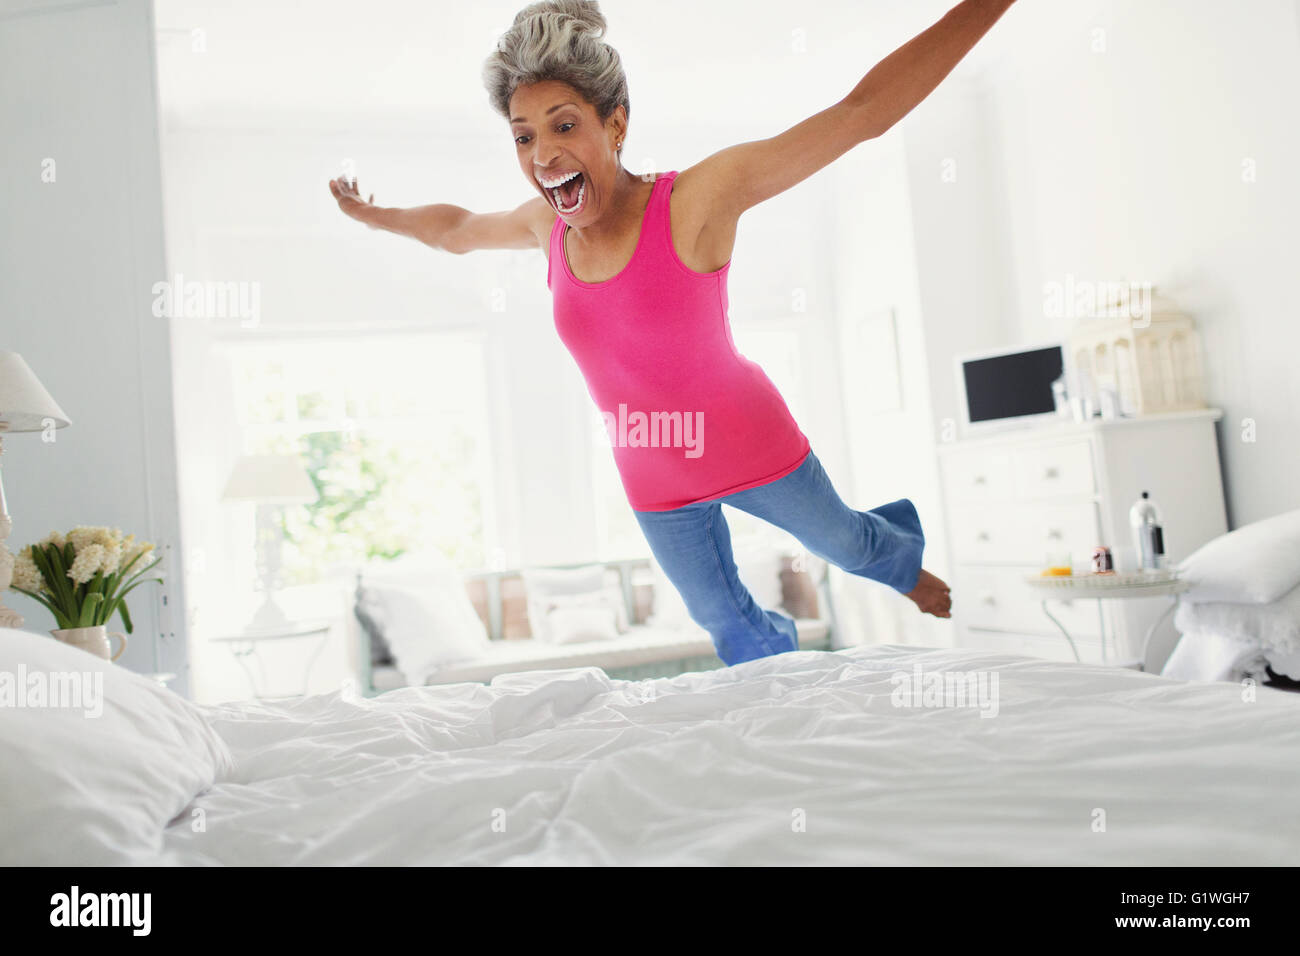 Playful young woman jumping sur le lit Banque D'Images